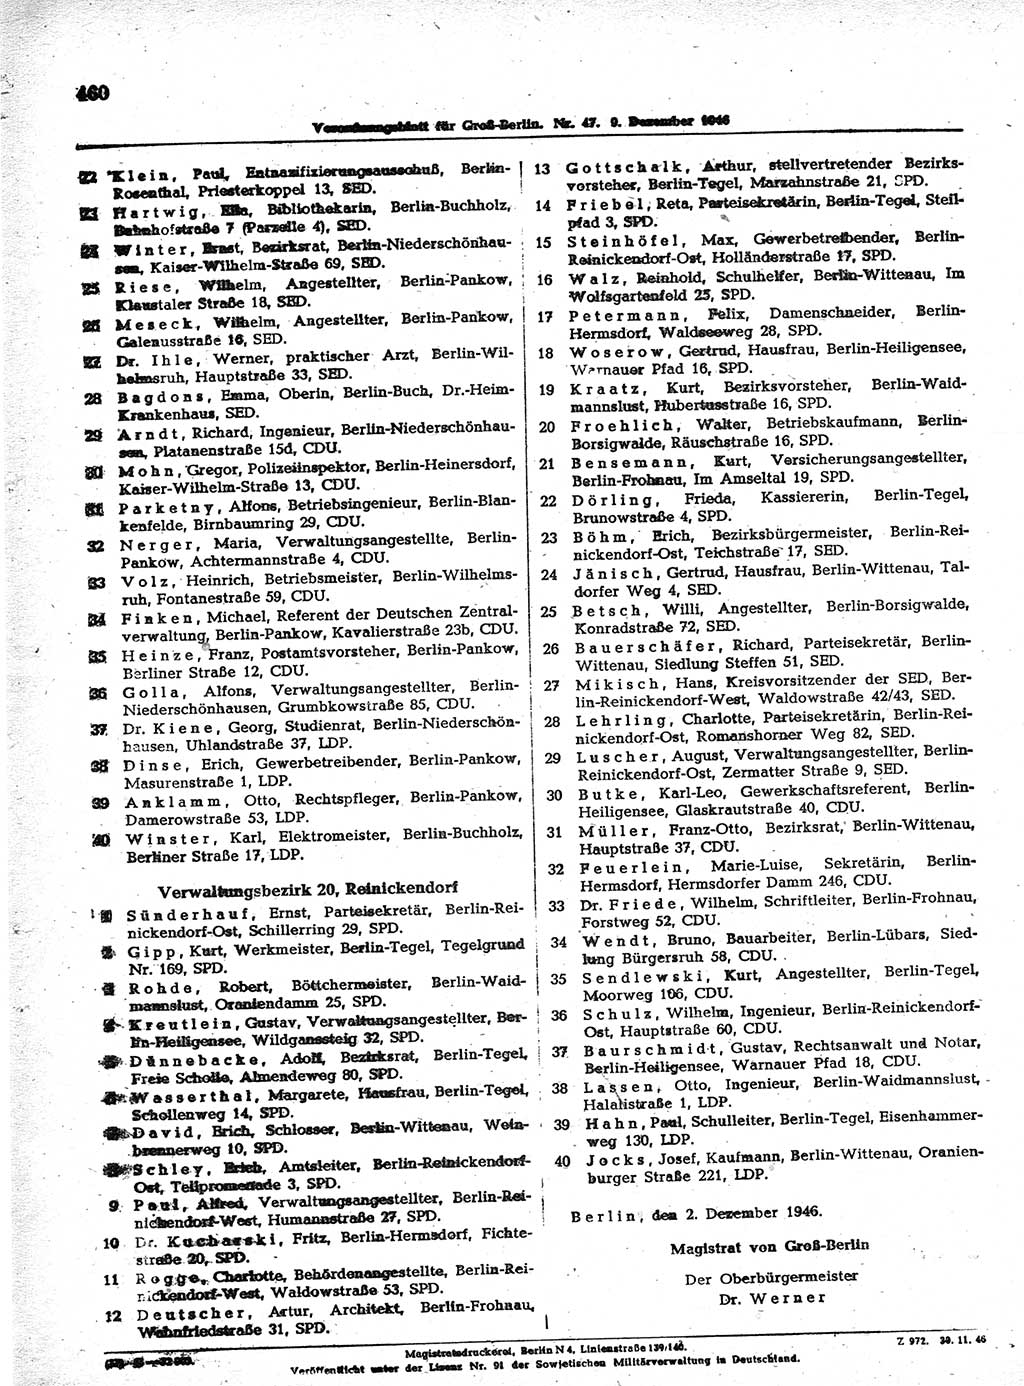 Verordnungsblatt (VOBl.) der Stadt Berlin, für Groß-Berlin 1946, Seite 460 (VOBl. Bln. 1946, S. 460)